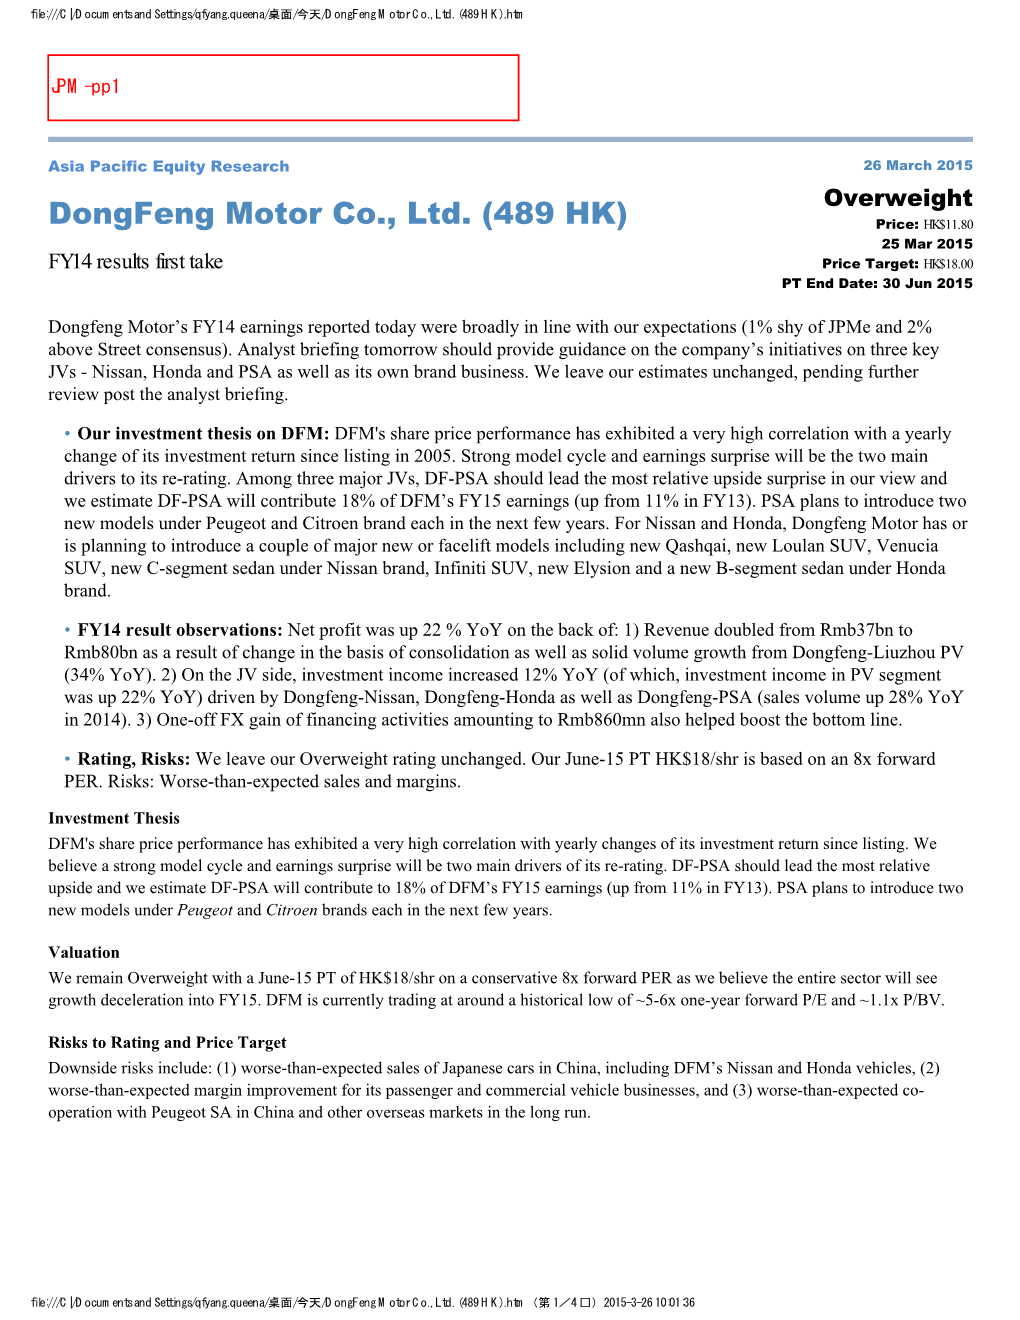 Dongfeng Motor Co., Ltd. (489 HK).Htm